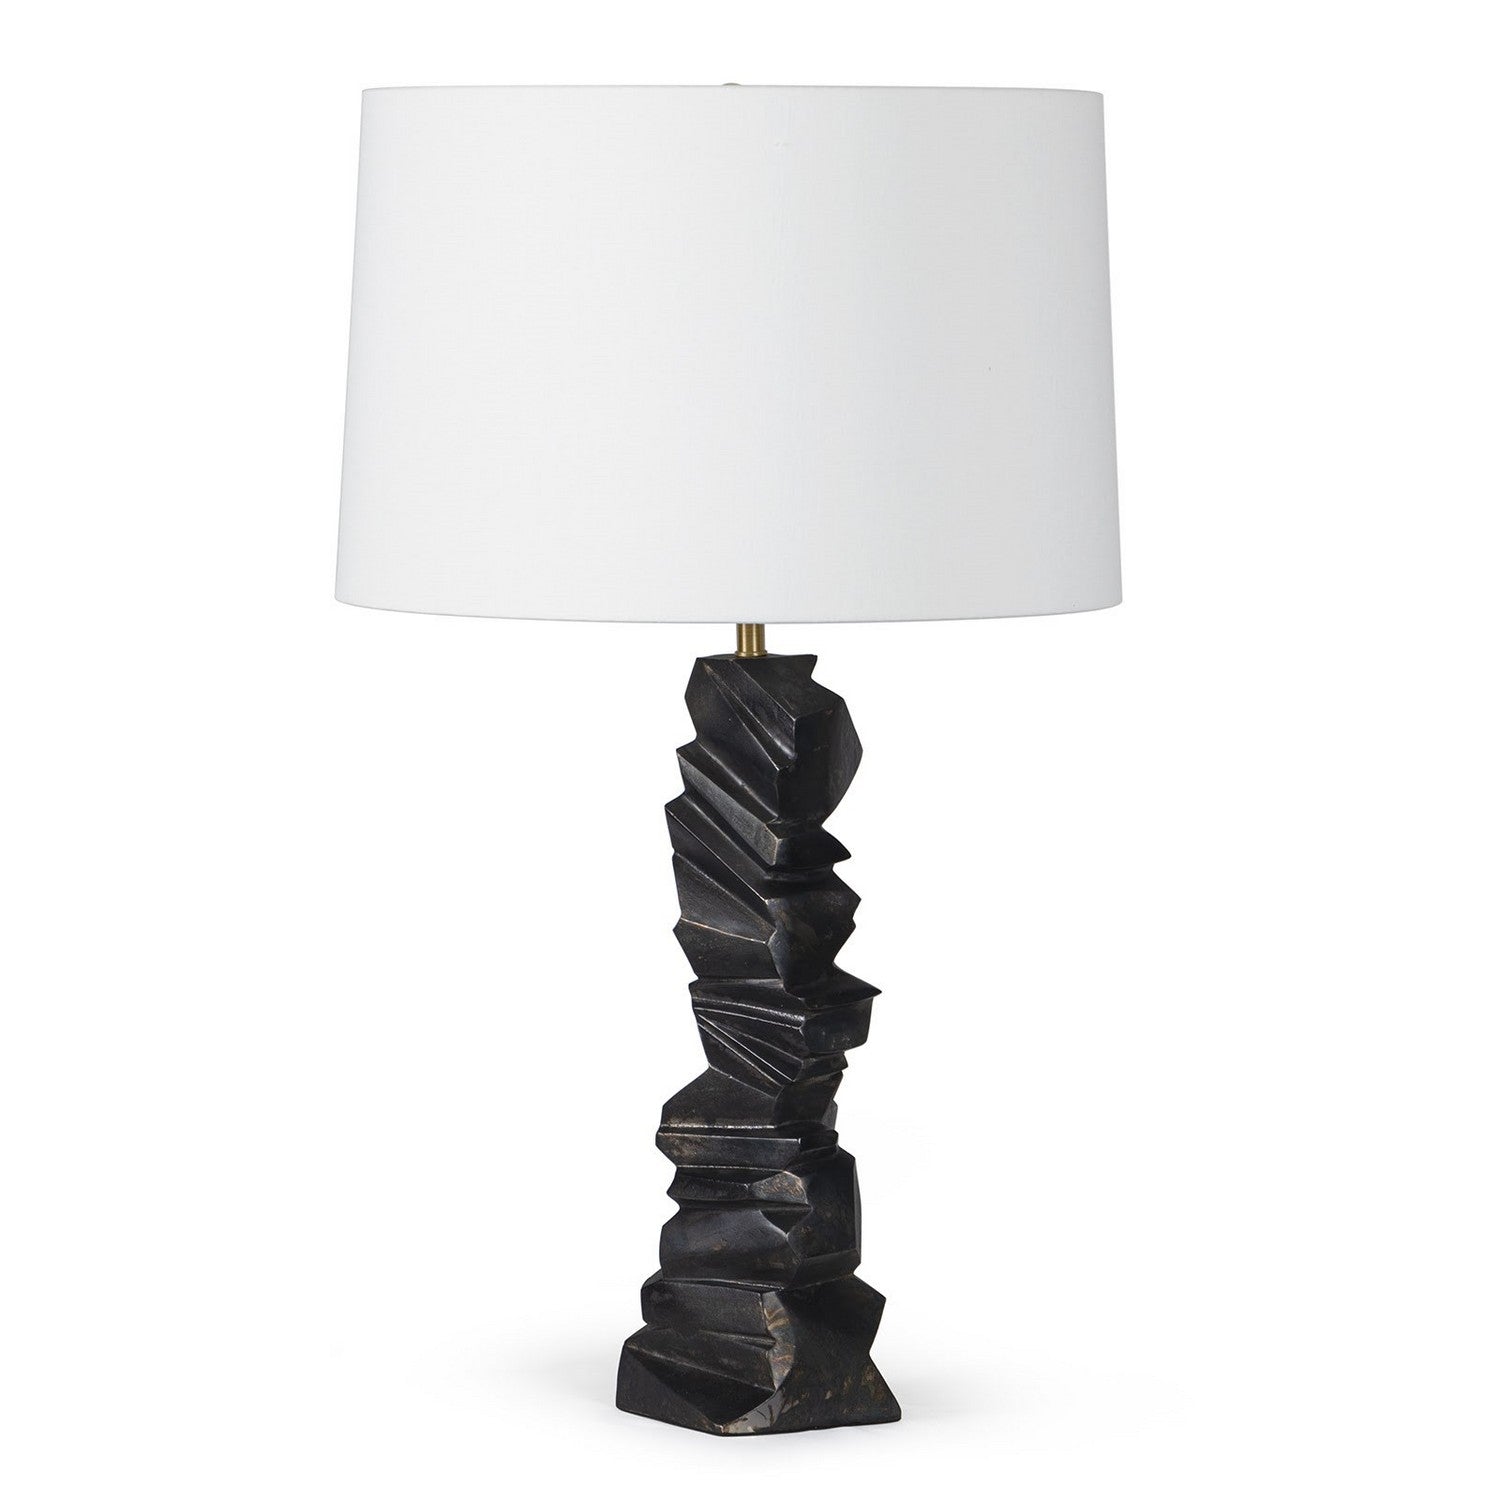 Regina Andrew - 13-1638 - One Light Table Lamp - Gallerie - Blacken Zinc